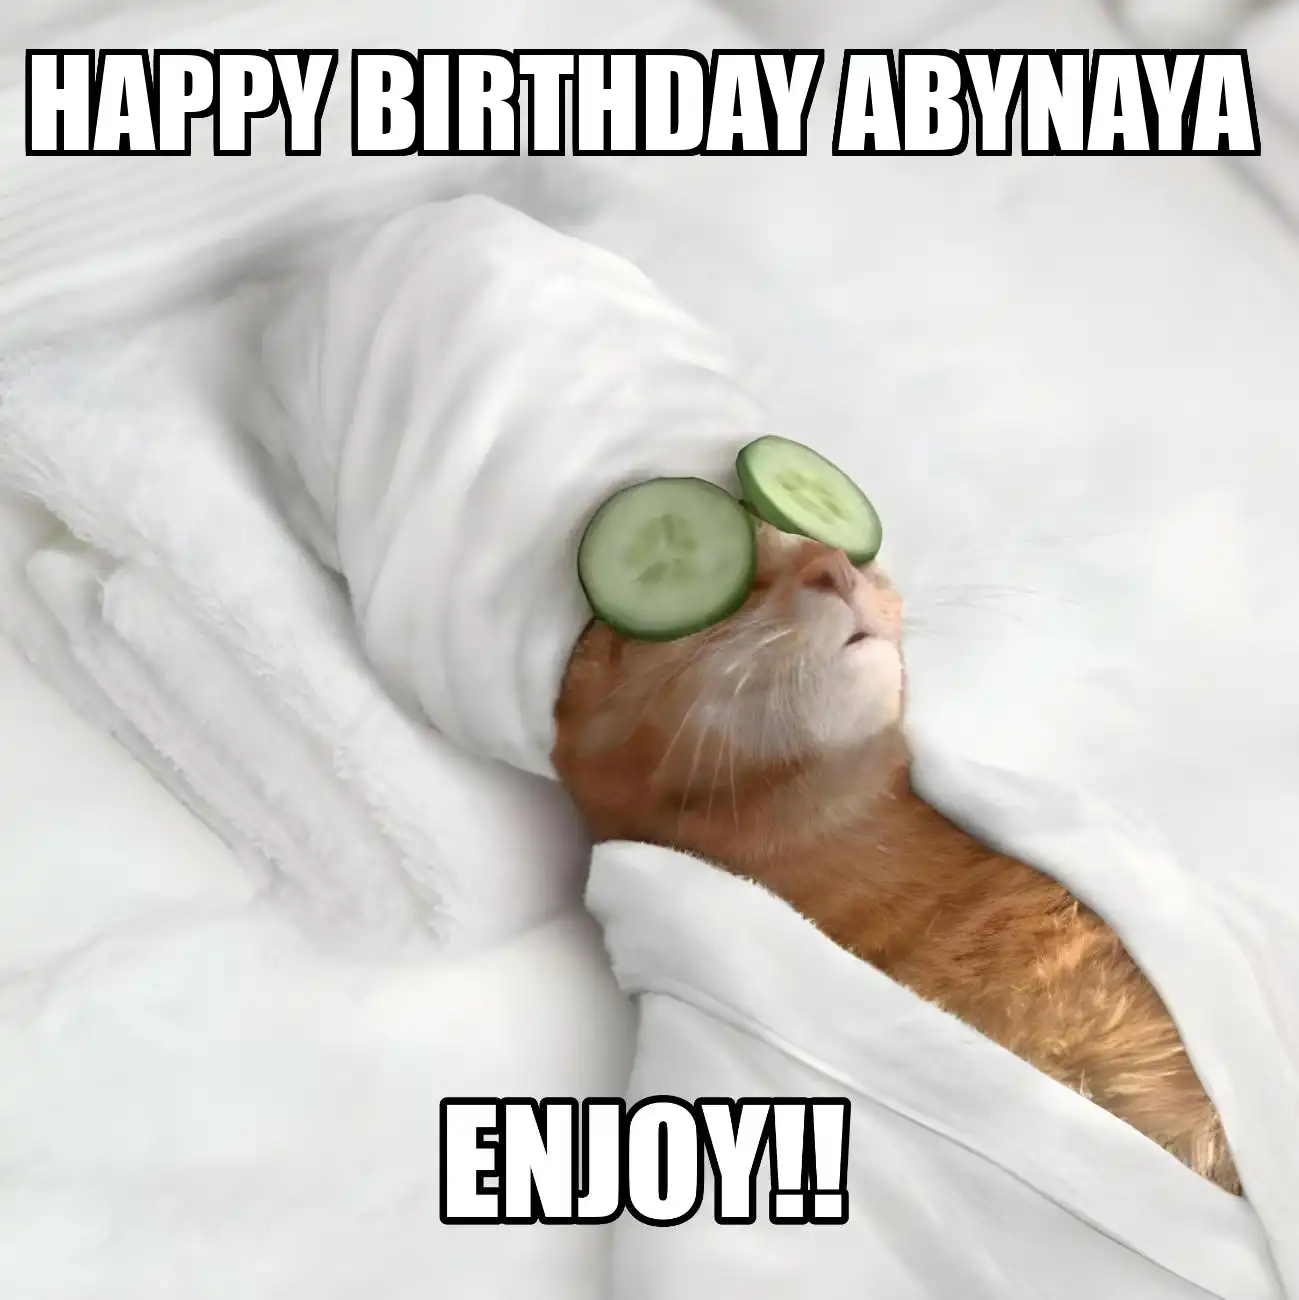 Happy Birthday Abynaya Enjoy Cat Meme